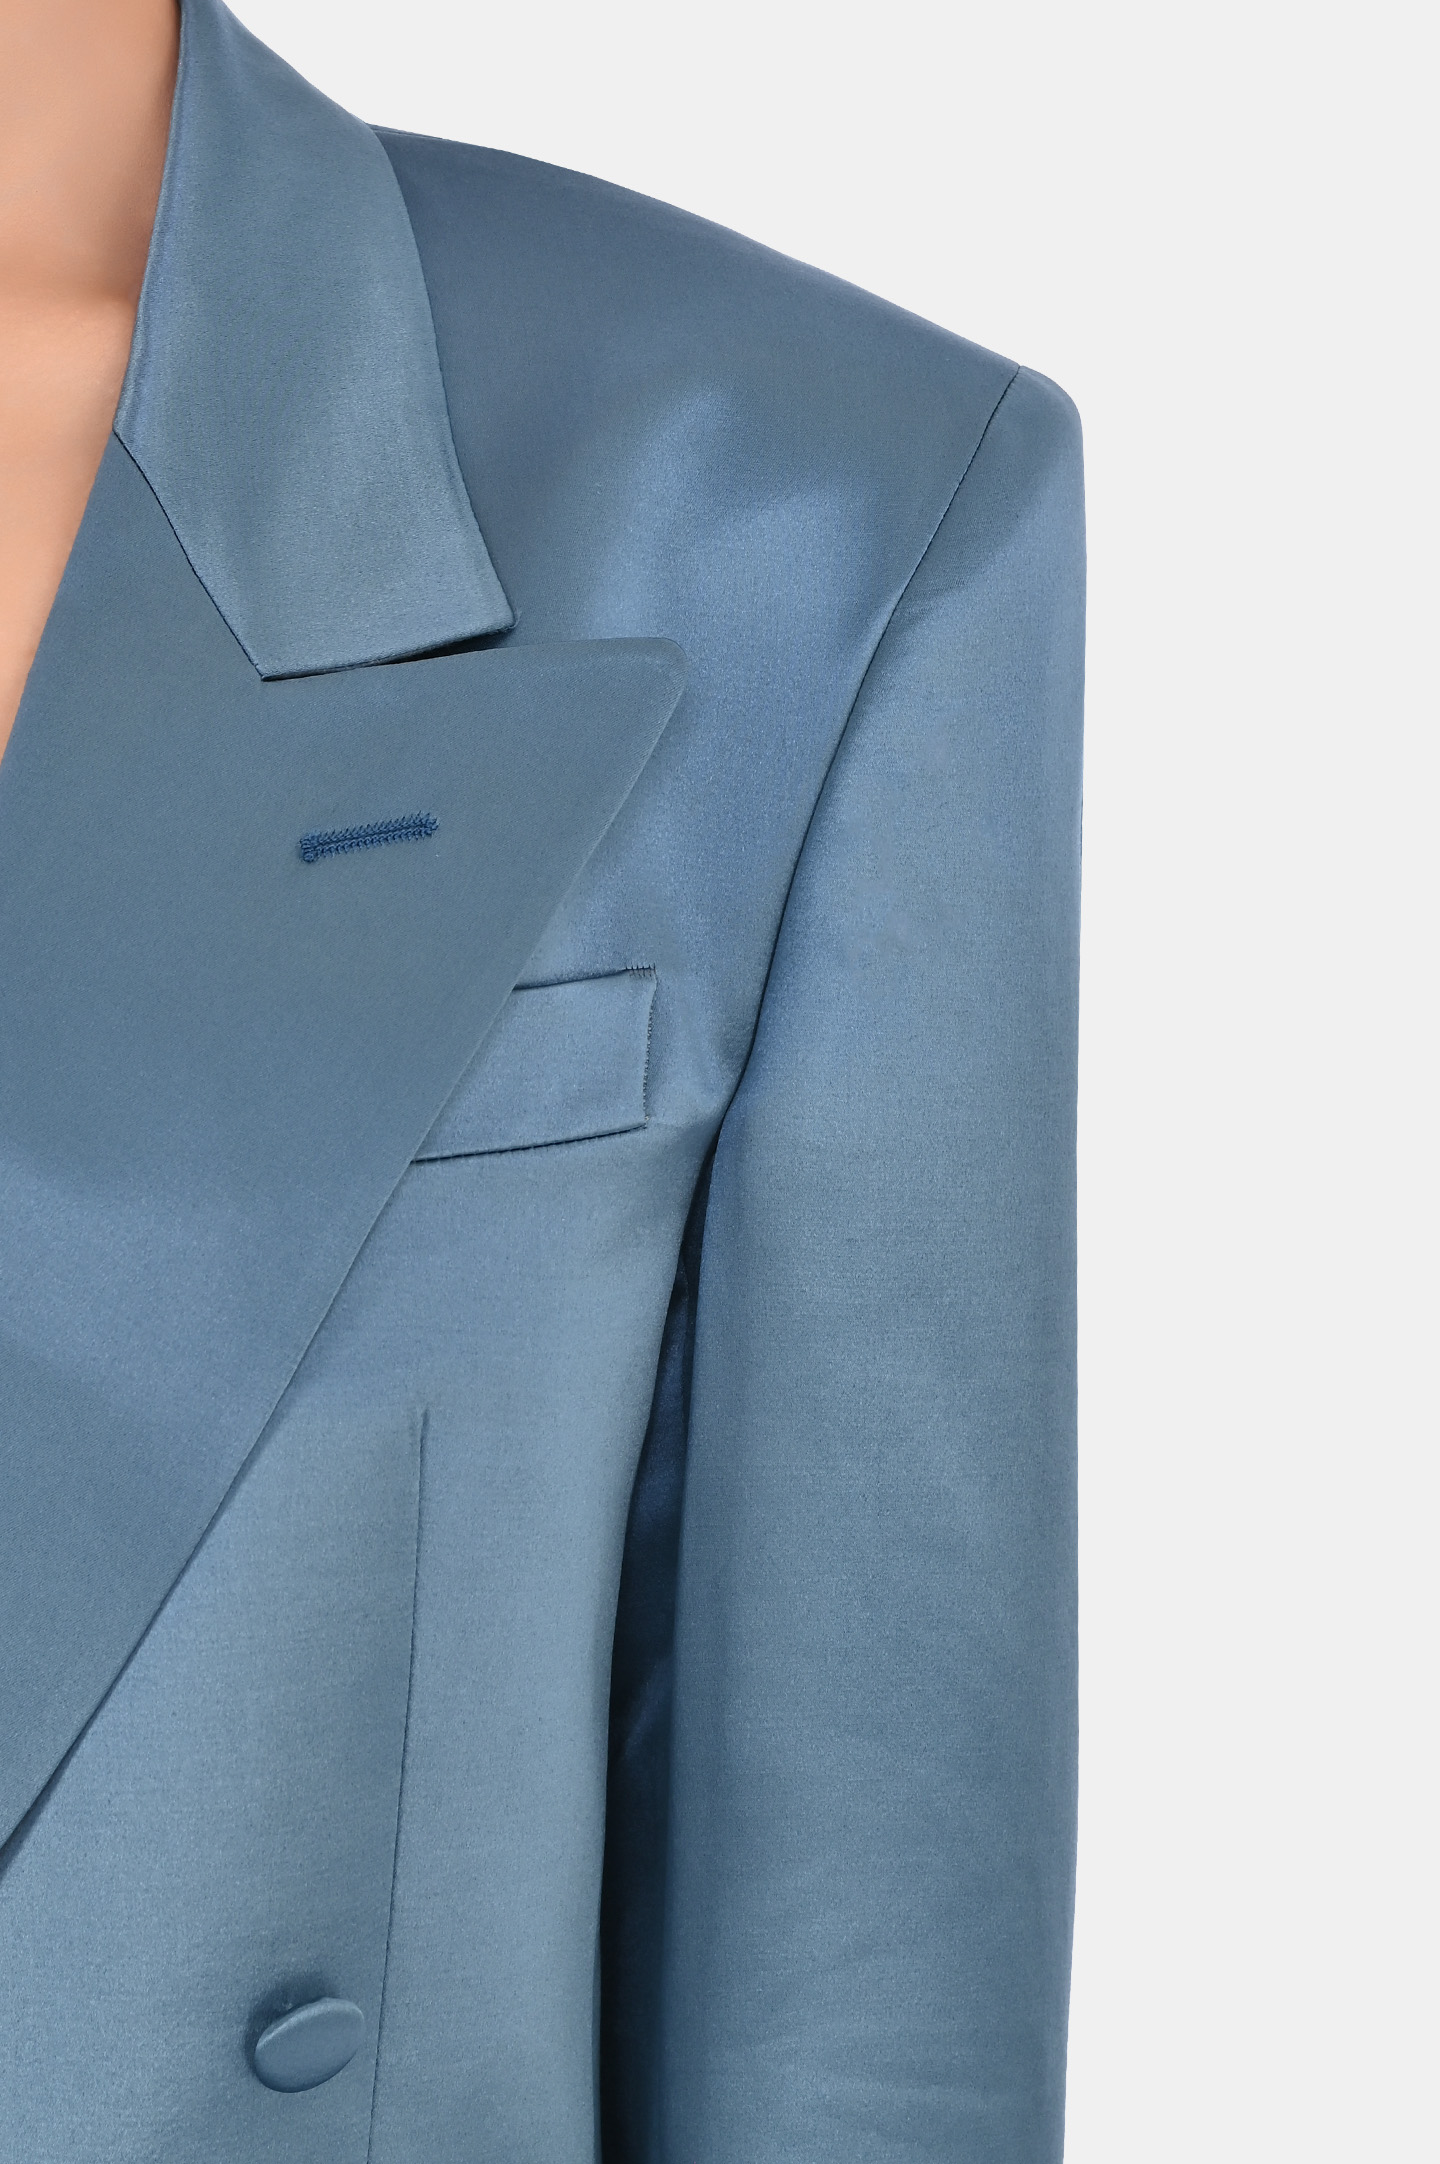 Жакет из шерсти и шелка двухбортный с карманами JACOB LEE WSB047SS24JB, цвет: Голубой, Женский